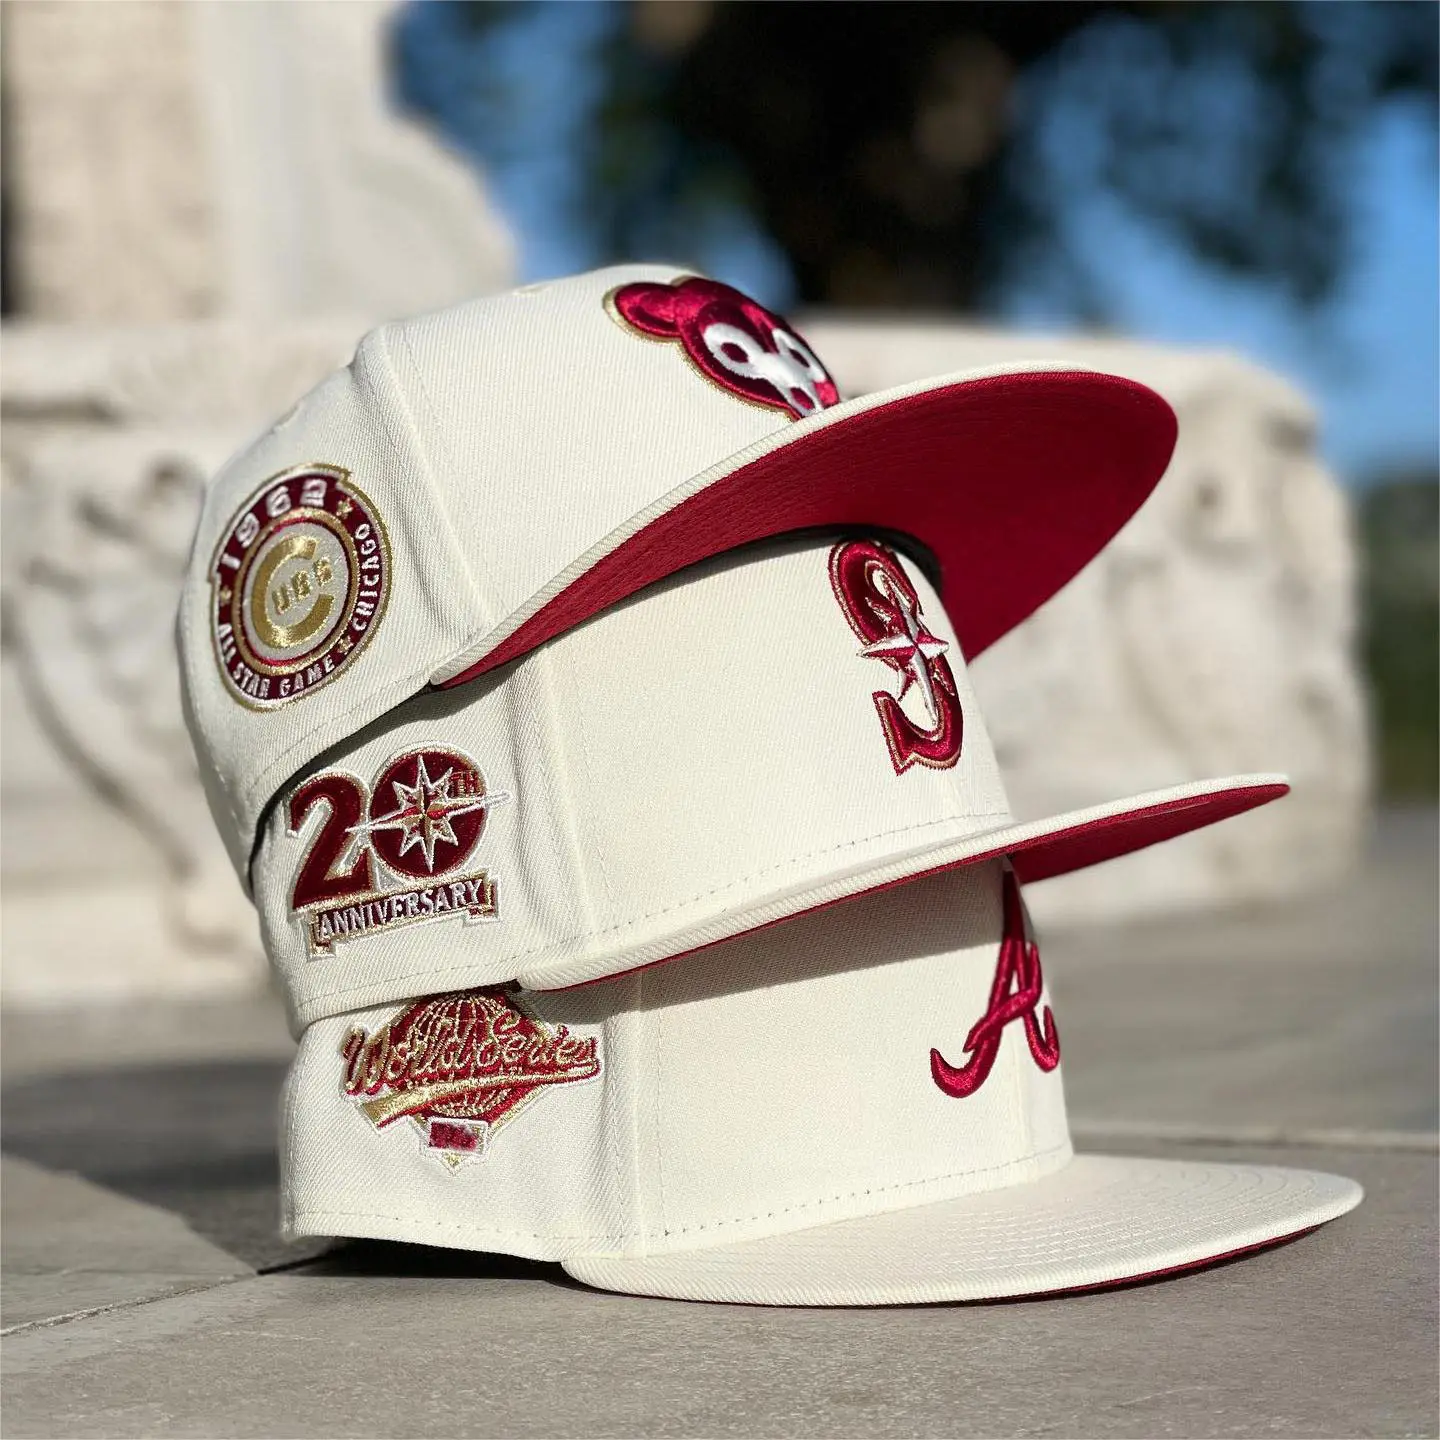 Vente en gros de casquettes personnalisées pas de stock personnalisables casquettes de baseball personnalisées nouvelles casquettes ajustées design original qualité gorras casquettes snapback